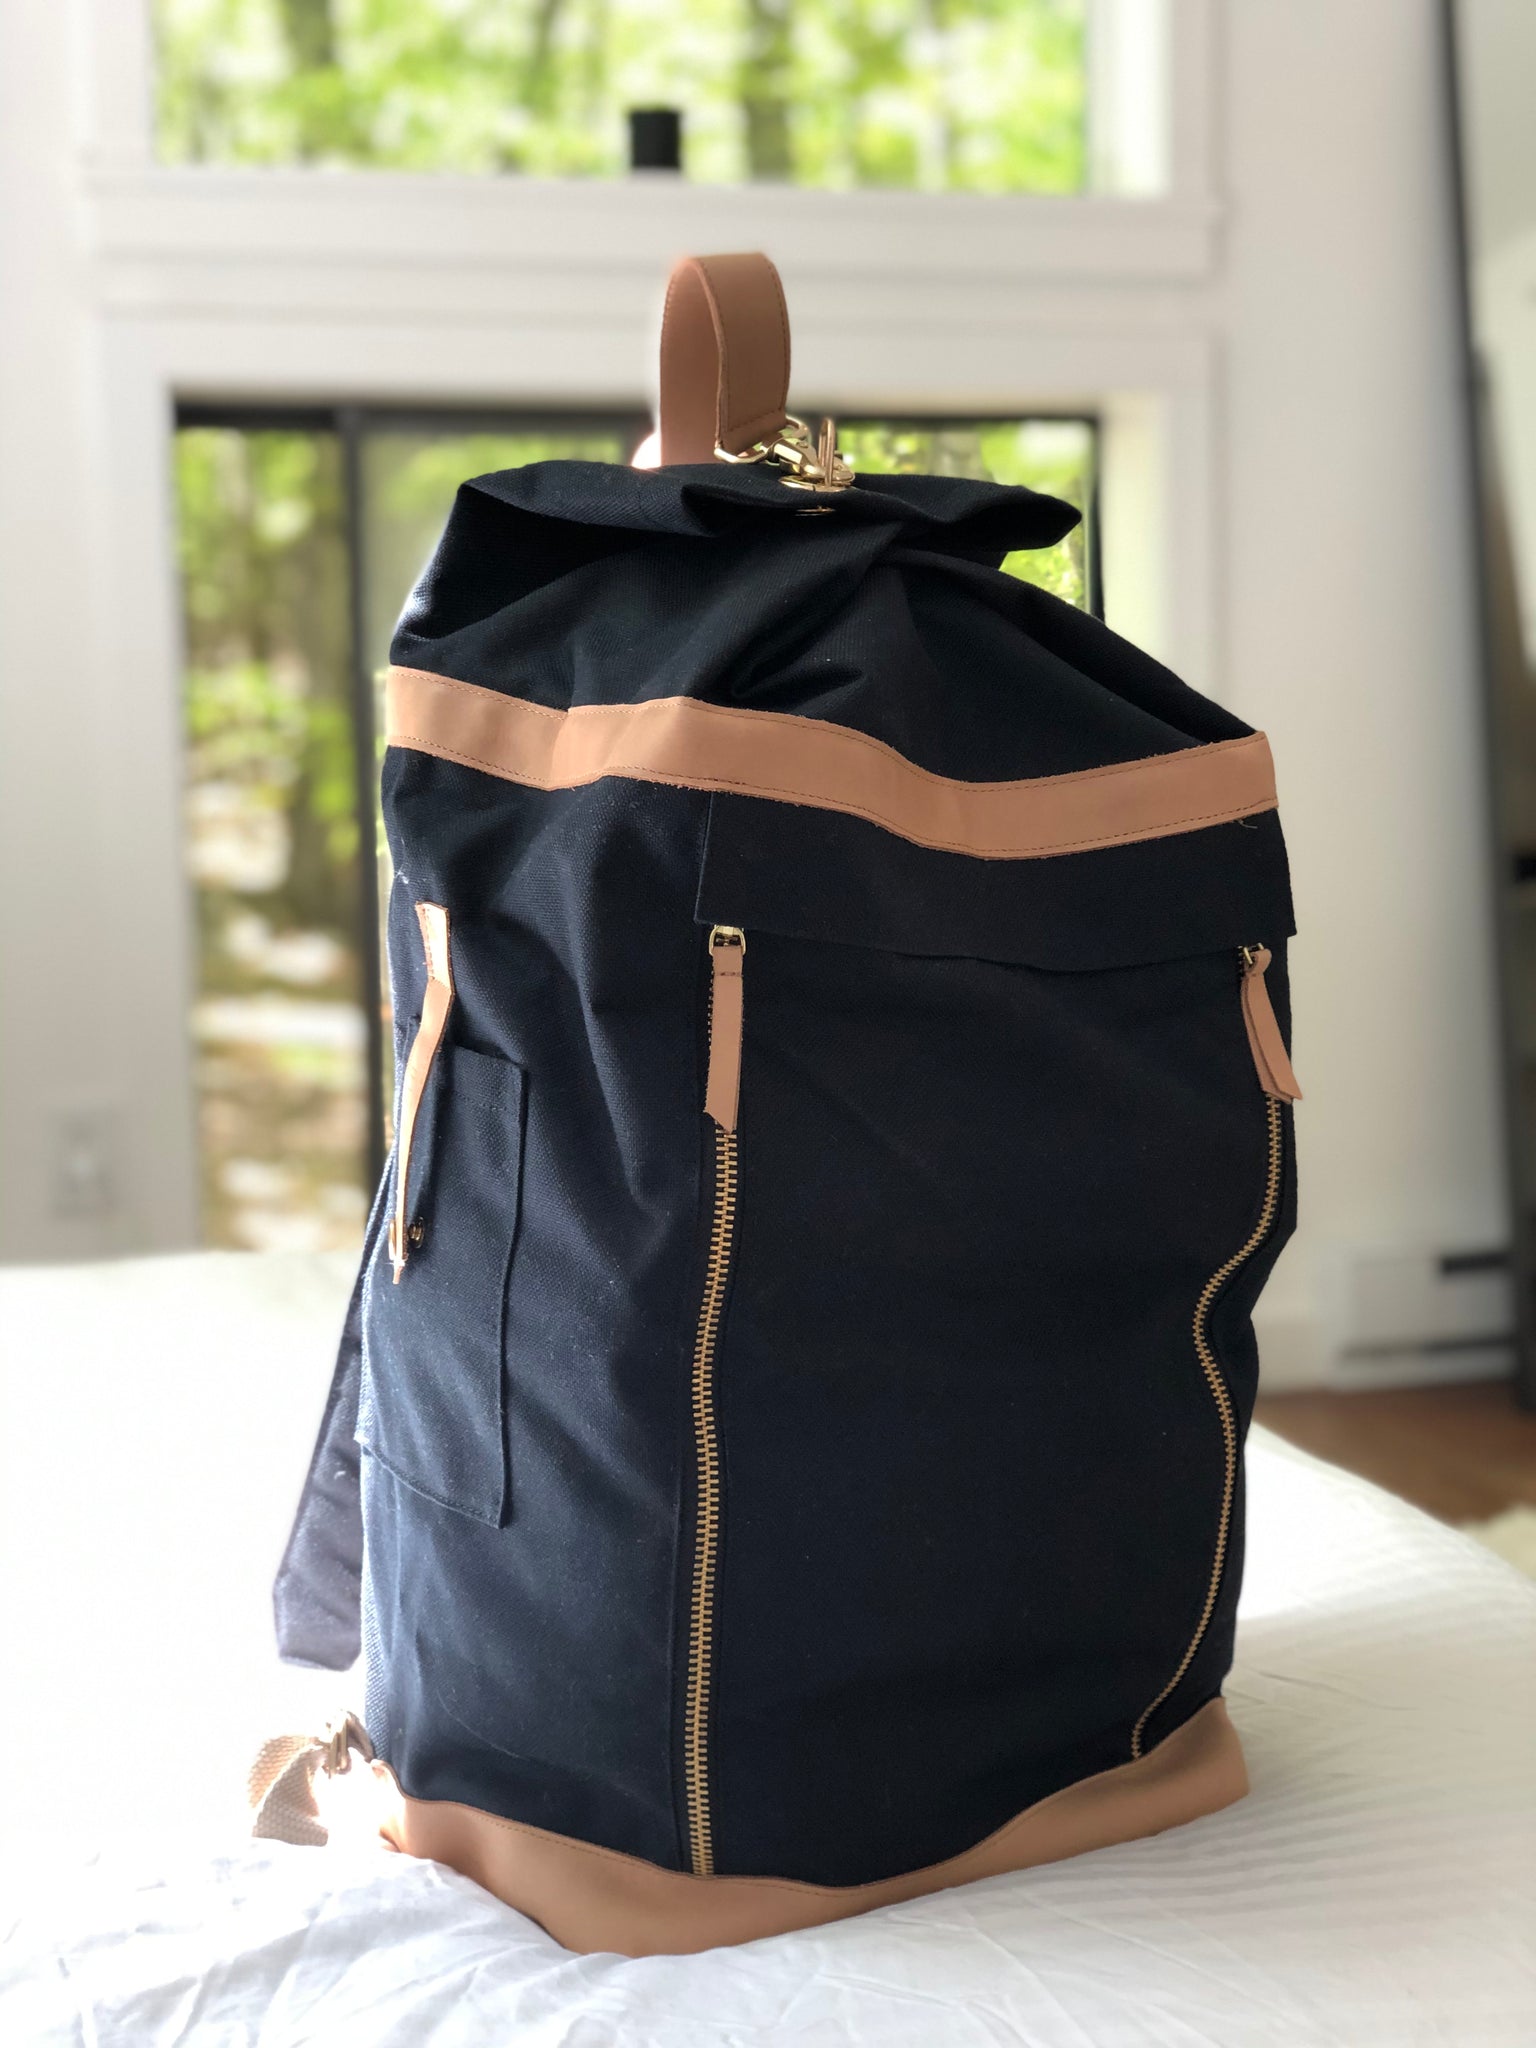 3 Reasons Why You Need a KAOS Bag